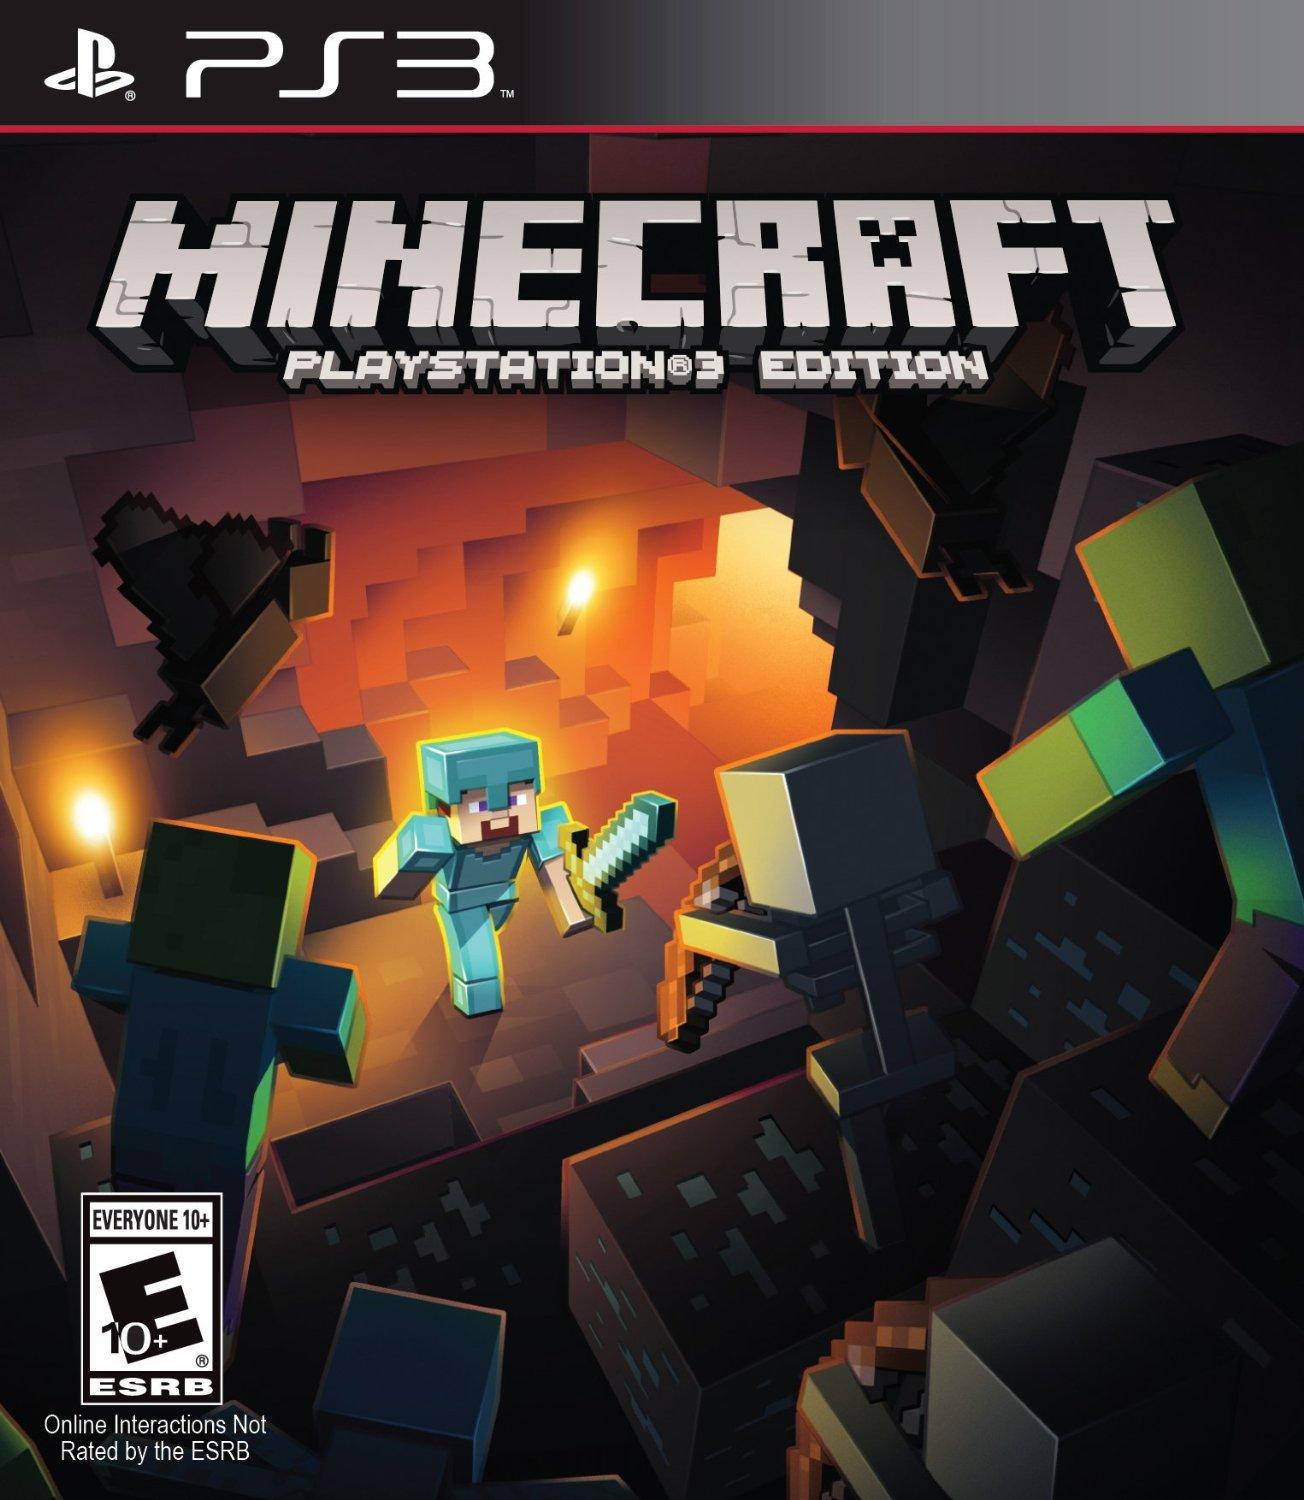 Jong suspensie zonlicht Minecraft - PlayStation 3 Edition (PS3) | €20.99 | Goedkoop!